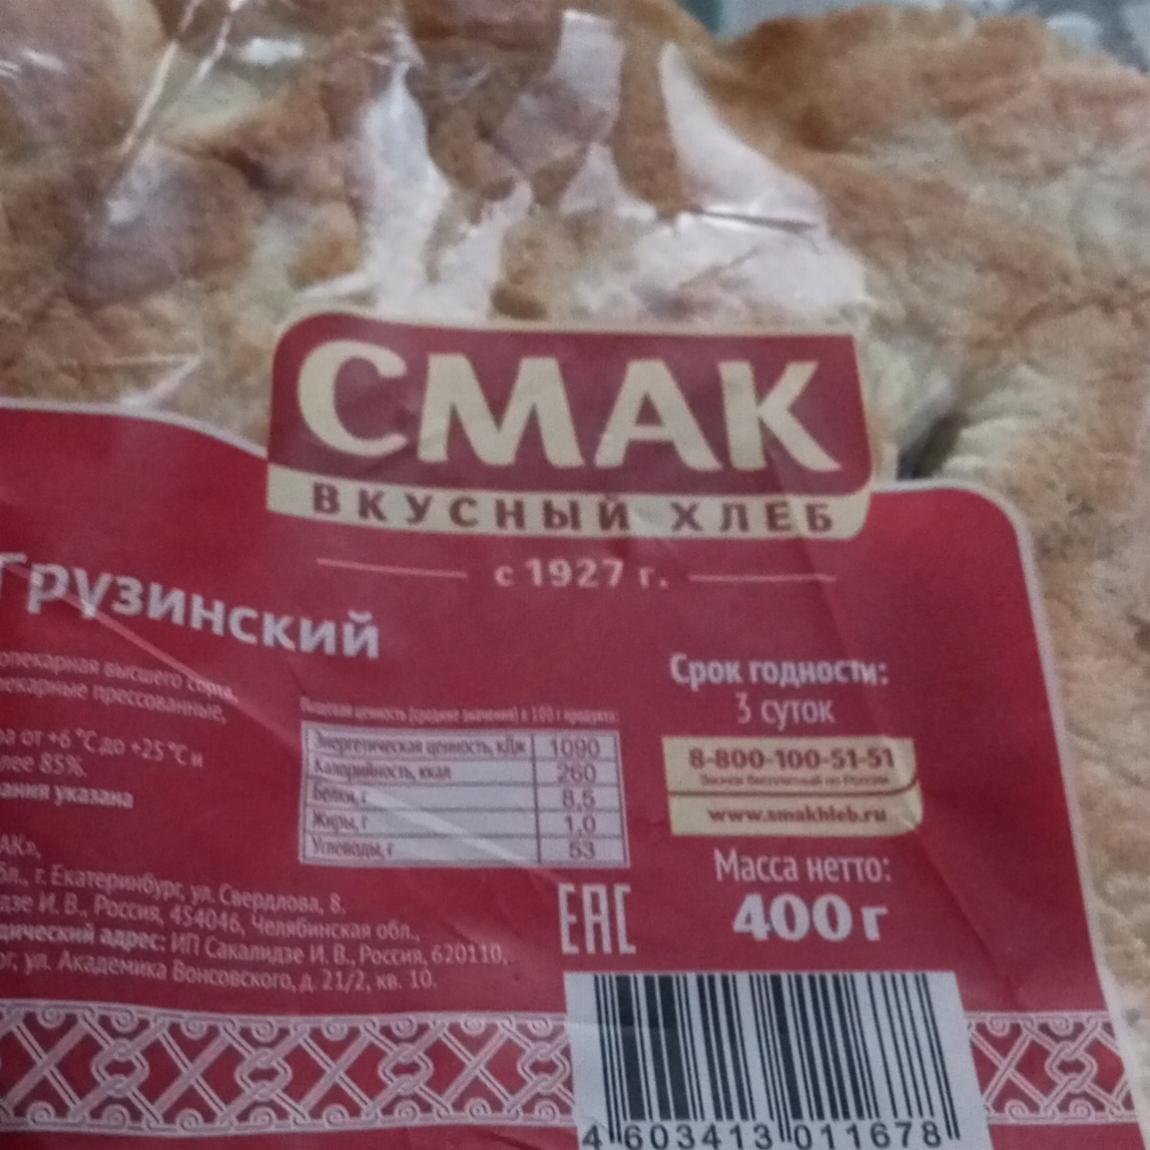 Фото - Лаваш Грузинский Смак вкусный хлеб